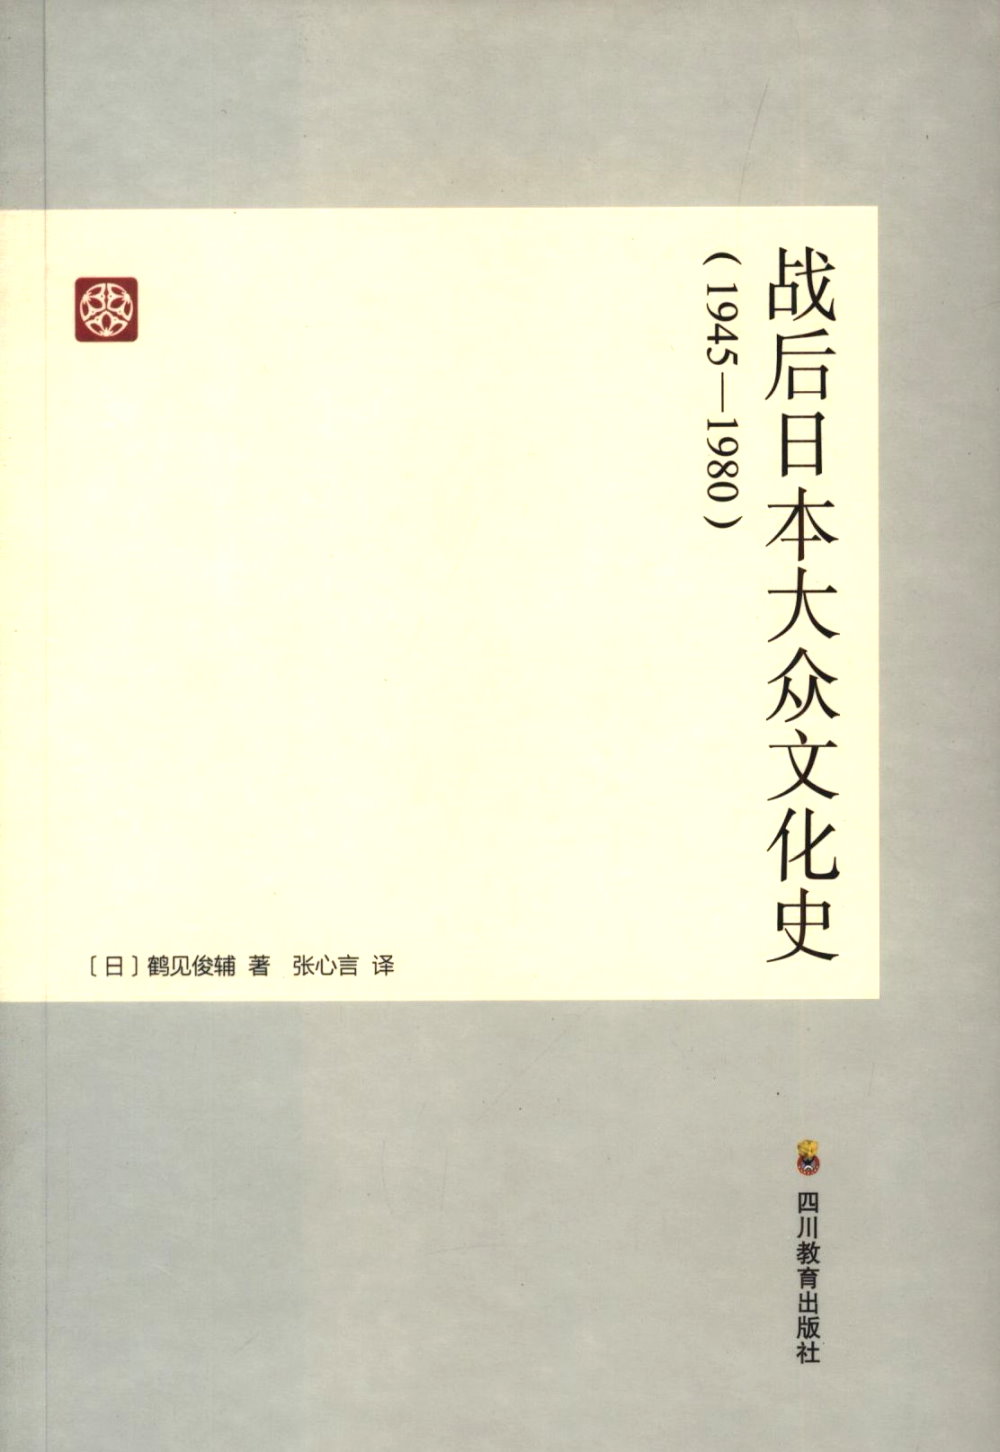 戰後日本大眾文化史(1945-1980)